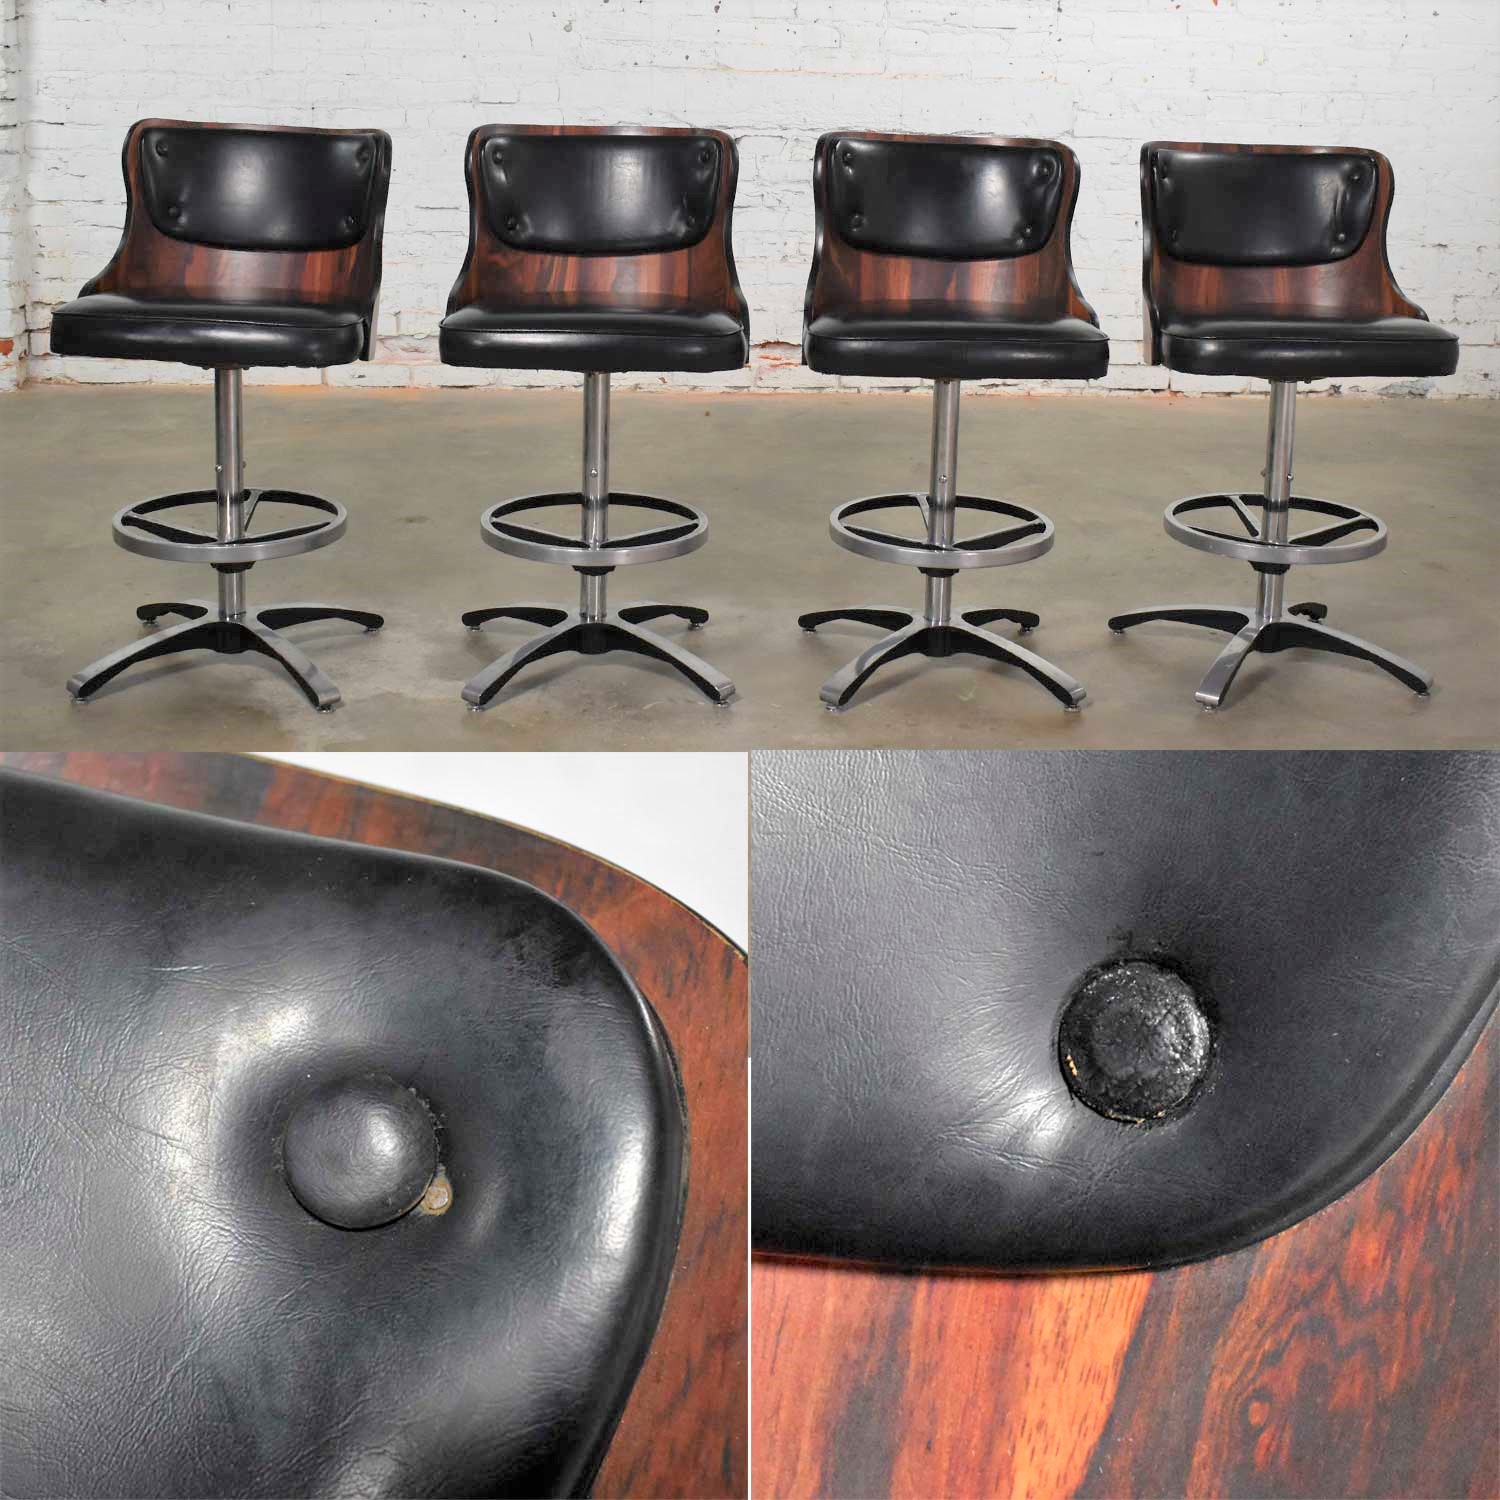 Vintage Modern Daystrom Adjustable Black Bar Stools Molded Curved Backs Set 4